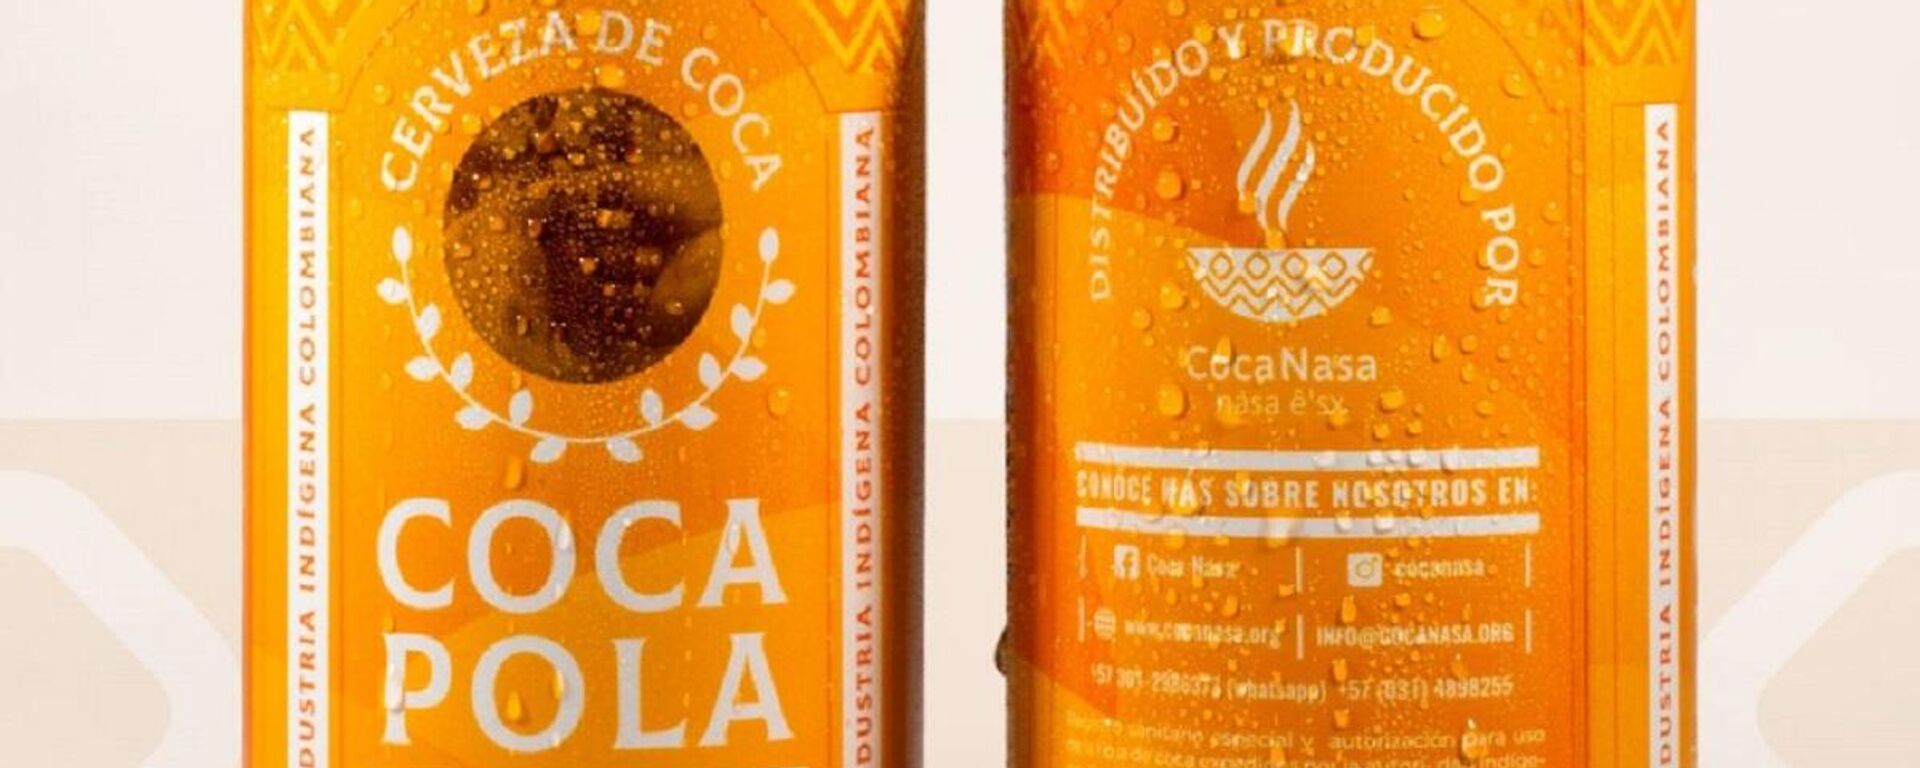 Coca Pola, cerveza de coca fabricada por la comunidad nasa en Colombia - Sputnik Mundo, 1920, 17.12.2021